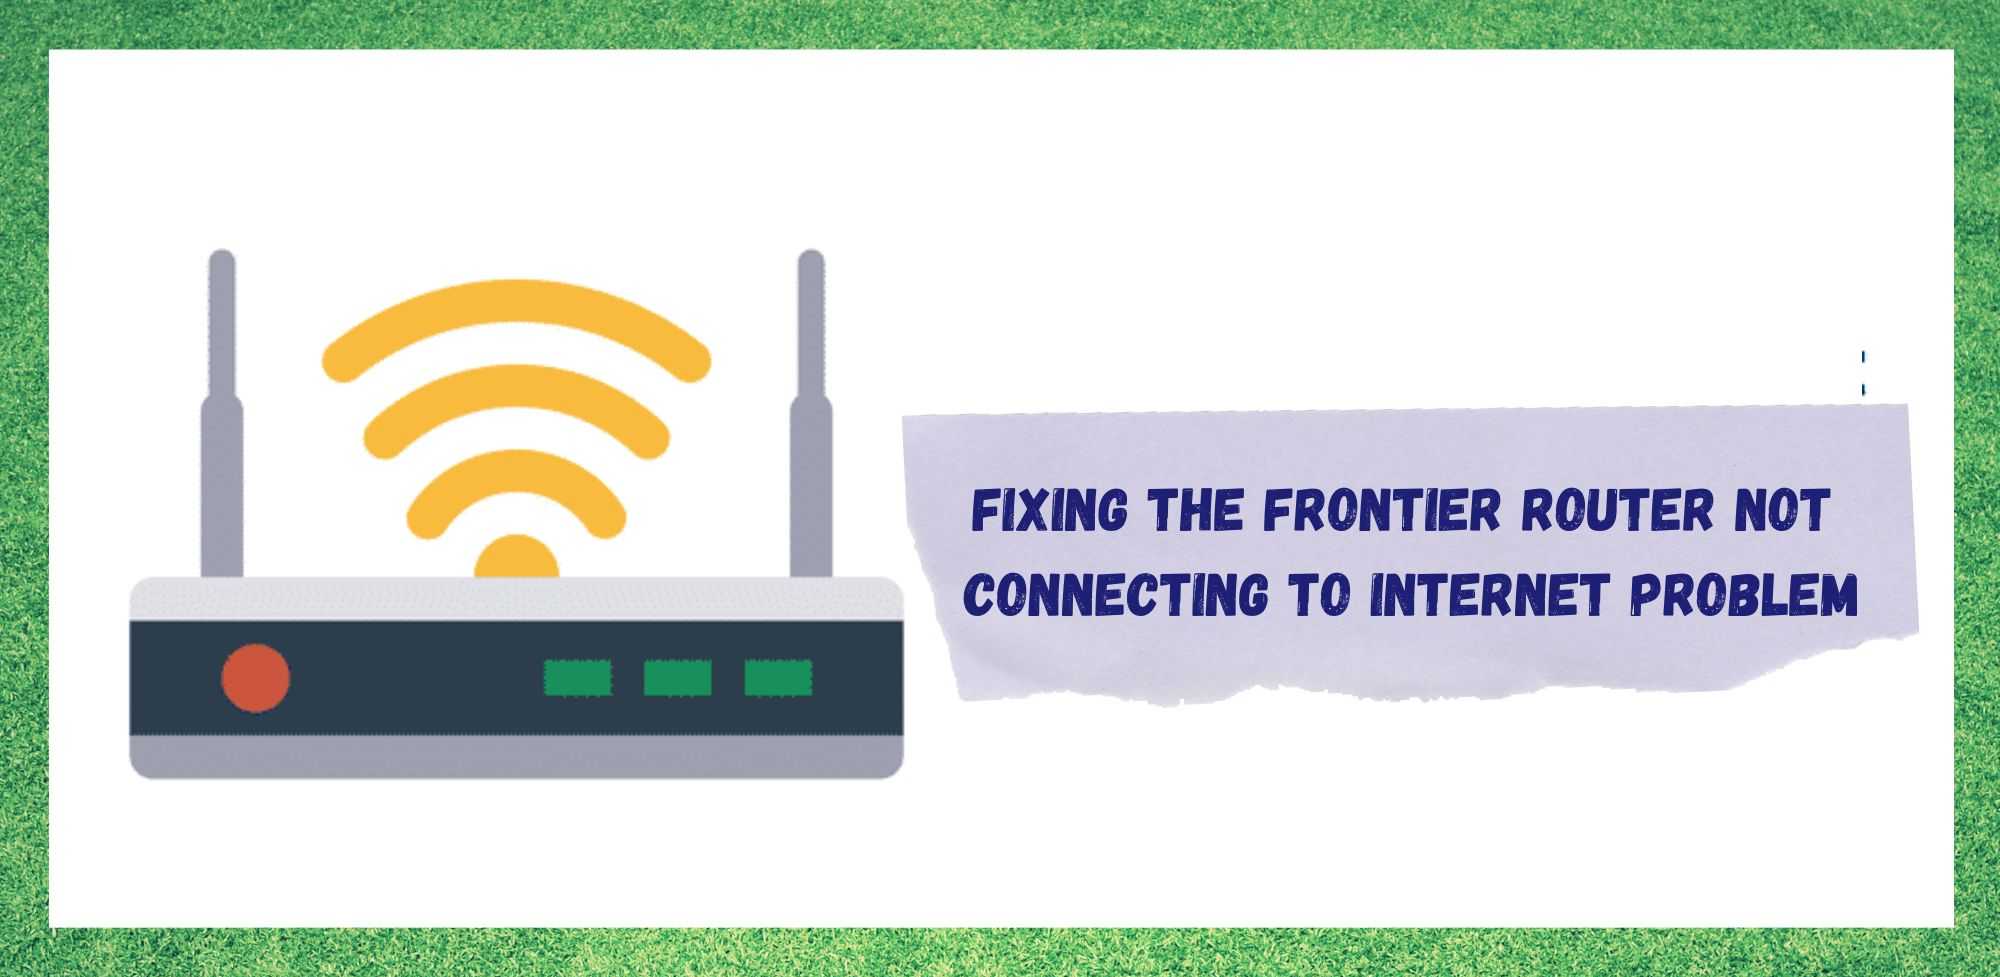 Frontier чиглүүлэгч интернетэд холбогдоогүй байгааг засах 4 арга